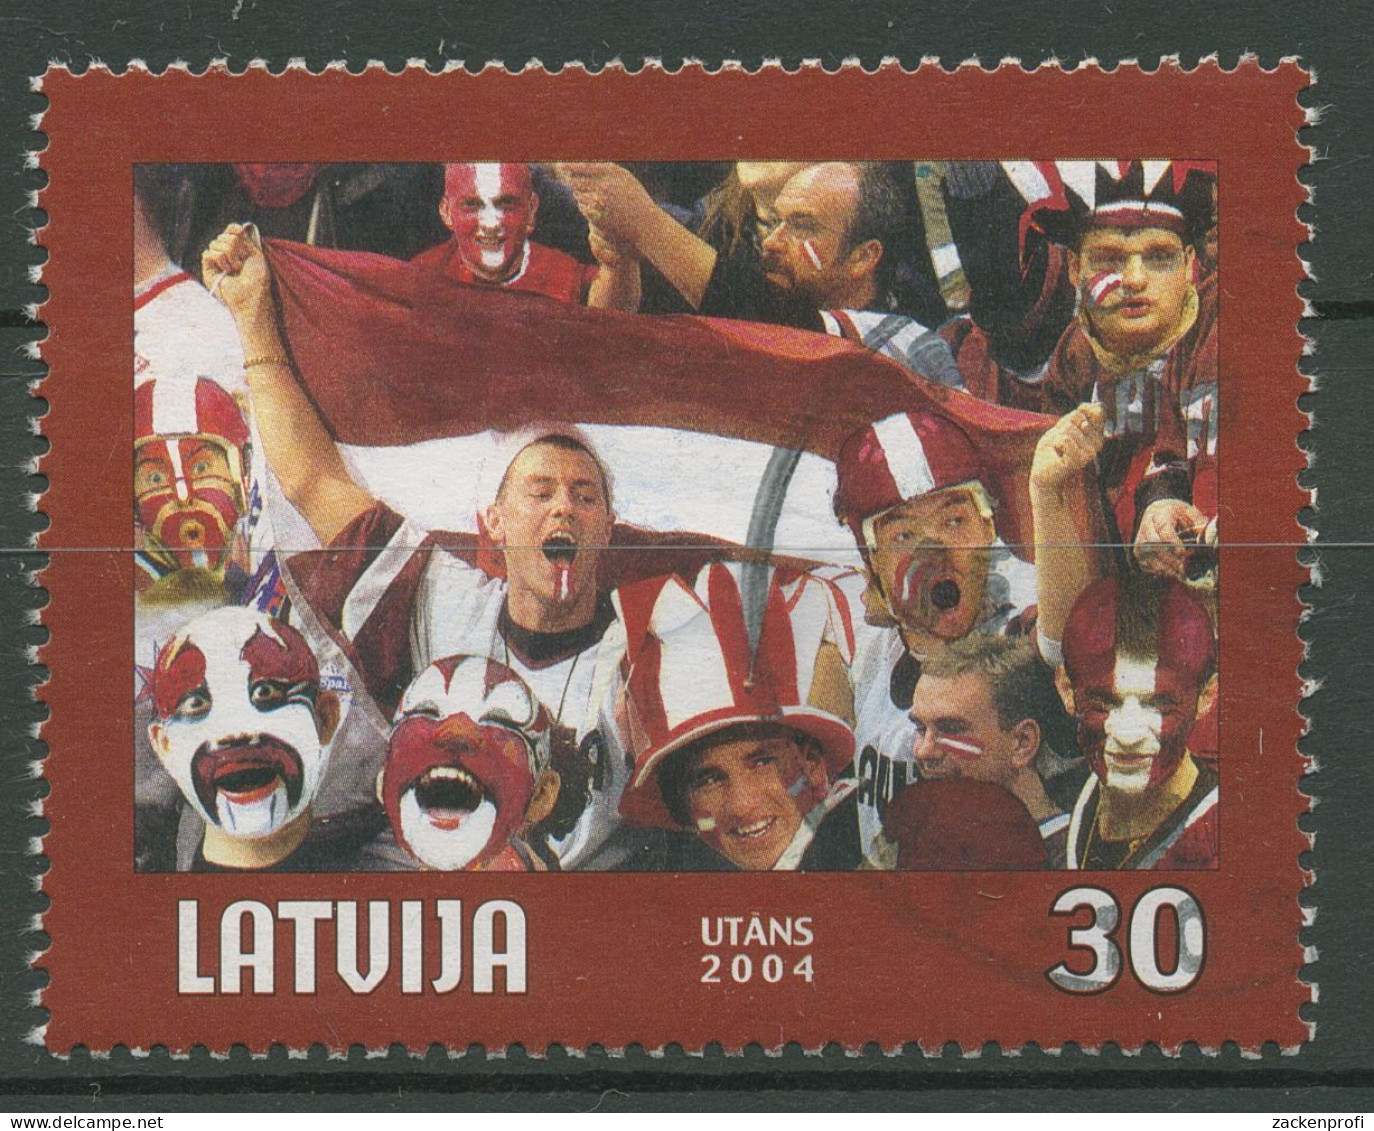 Lettland 2004 Eishockey-WM Riga 610 A Gestempelt - Lettland